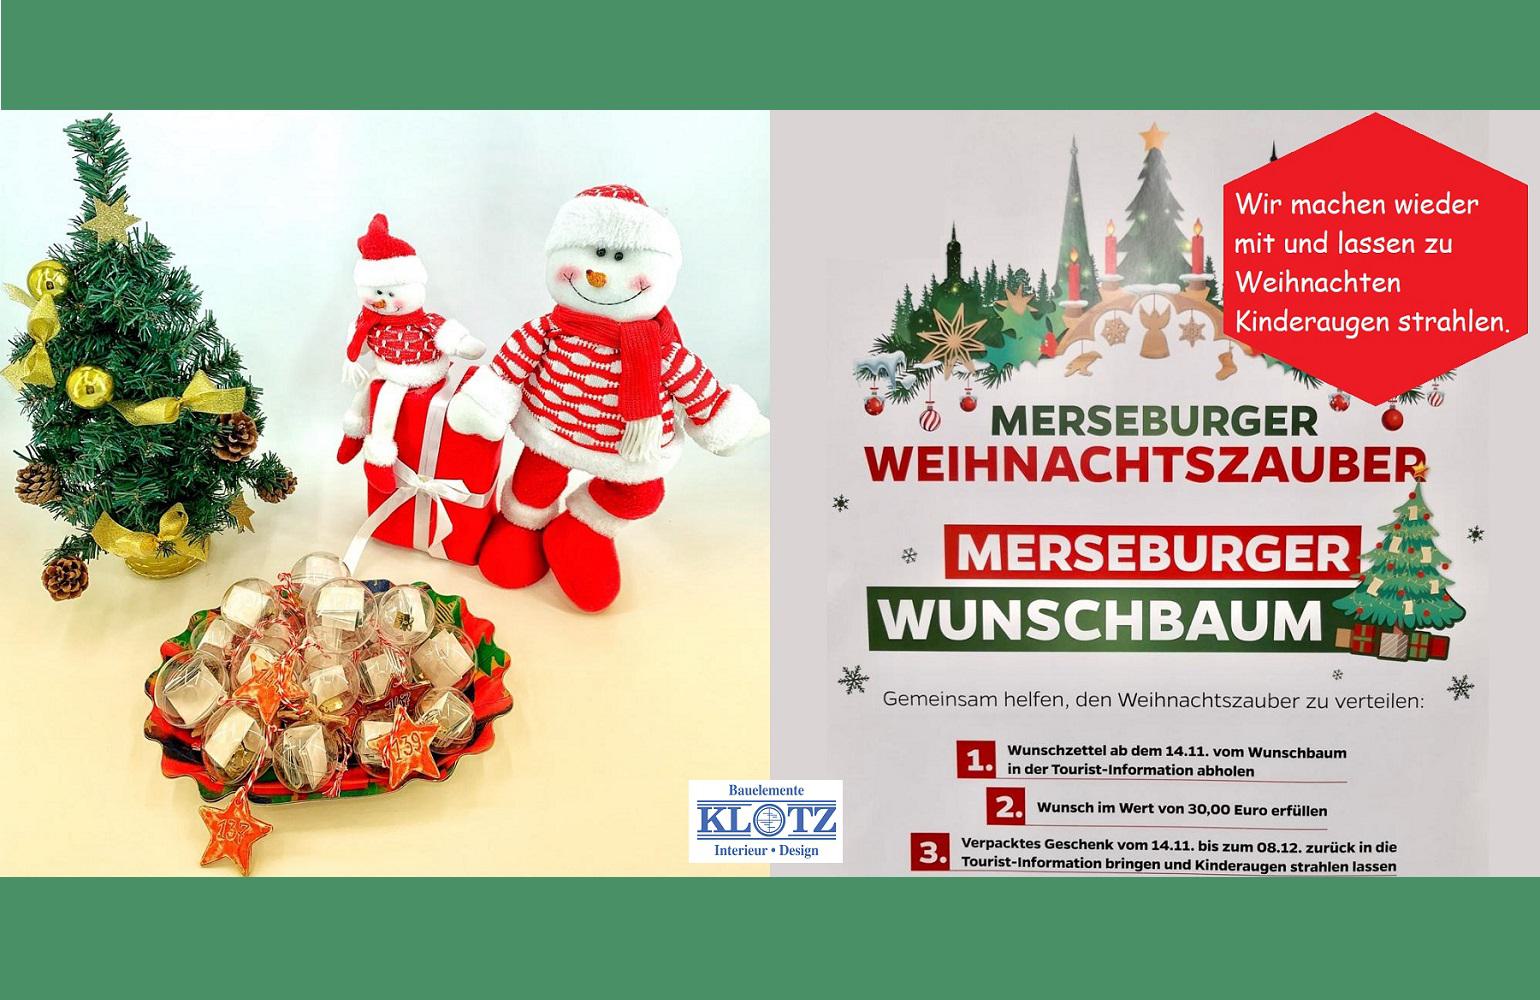 Merseburger Wunschbaum 2022